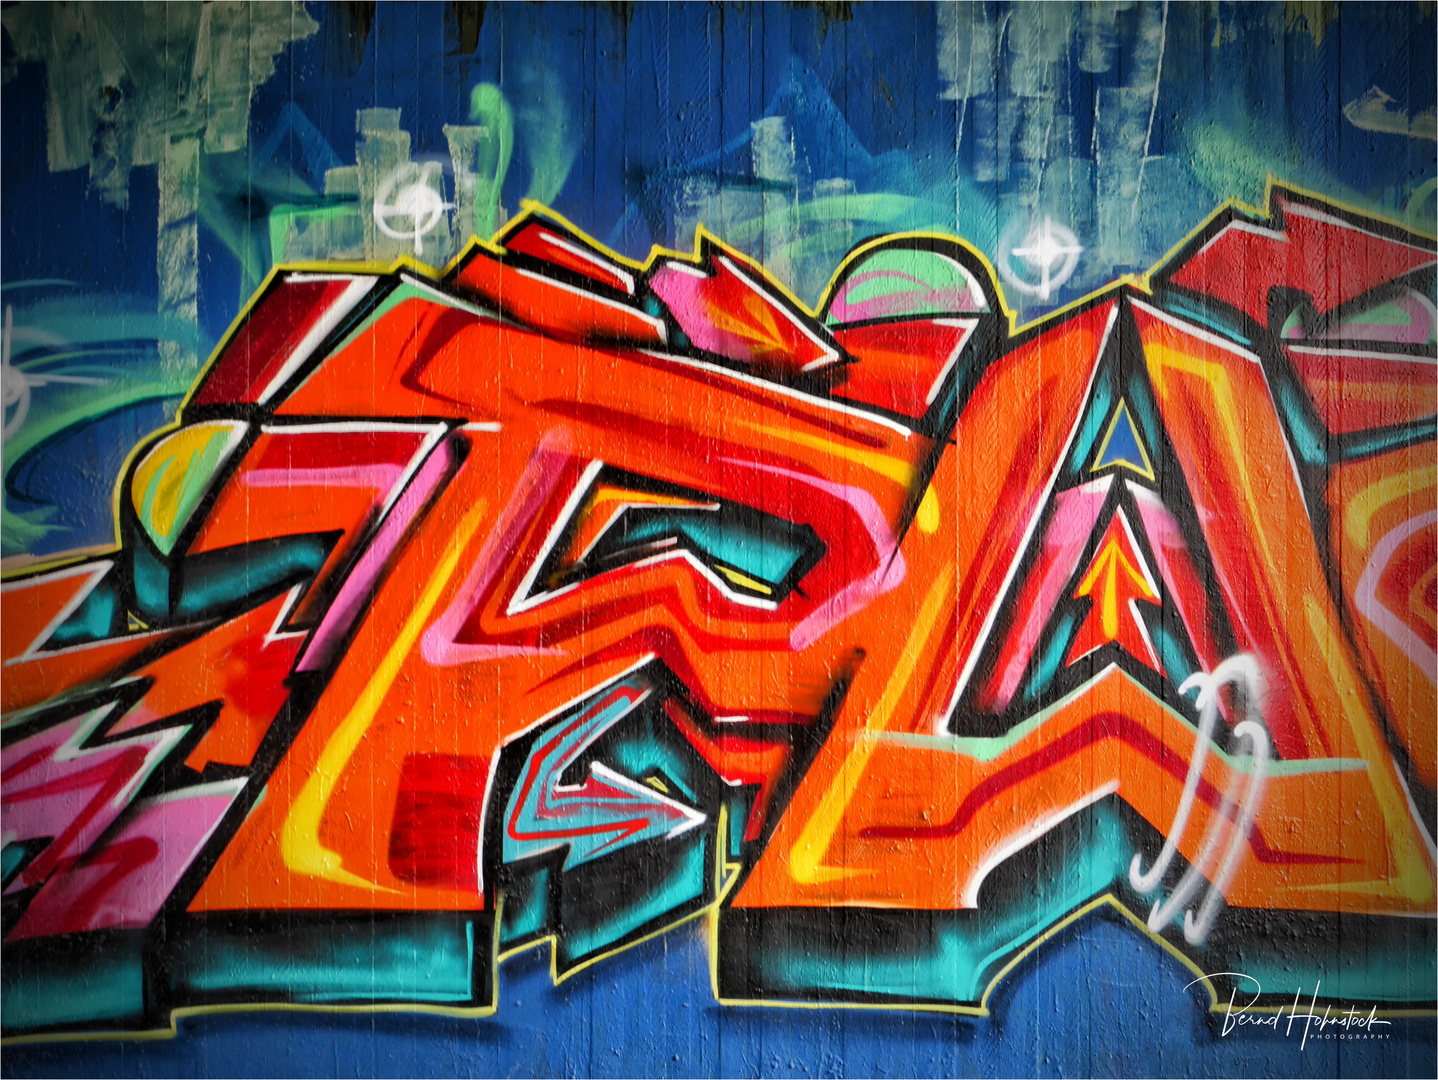  Graffito einer Kleinstadt